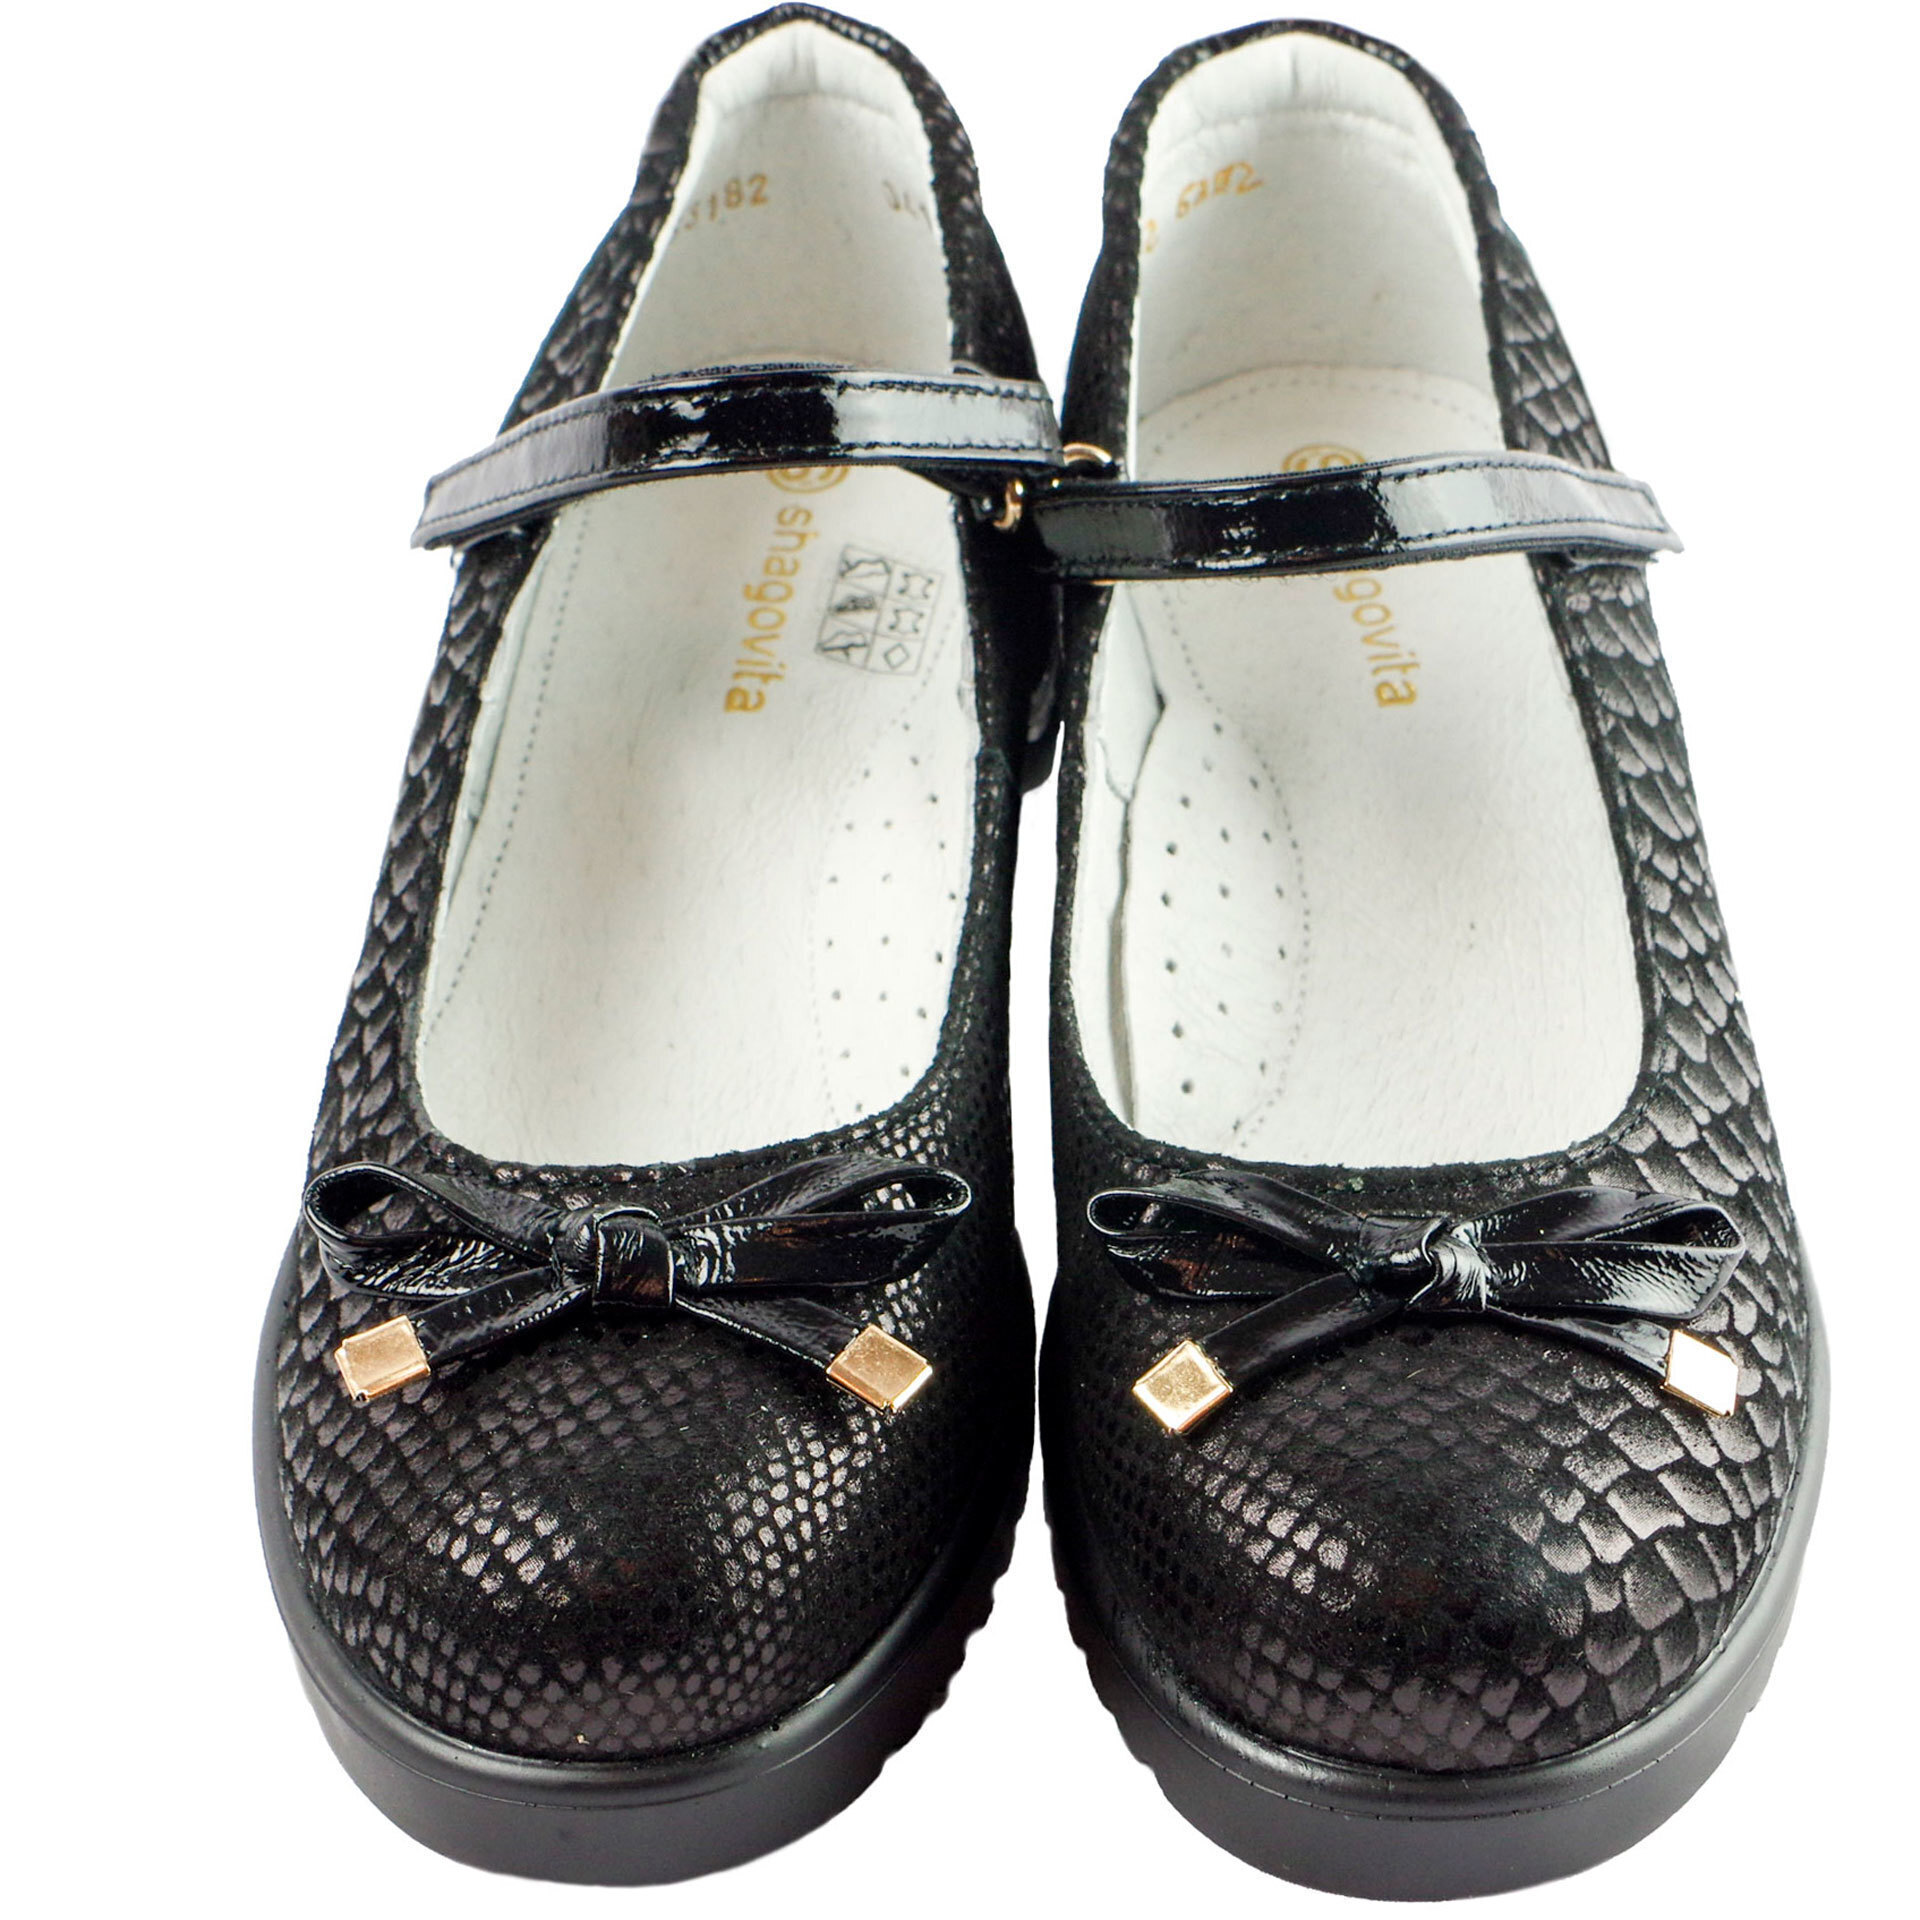 Туфли школьные (1572) материал Натуральная кожа, цвет Черный  для девочки 32-37 размеры – Sole Kids. Фото 3